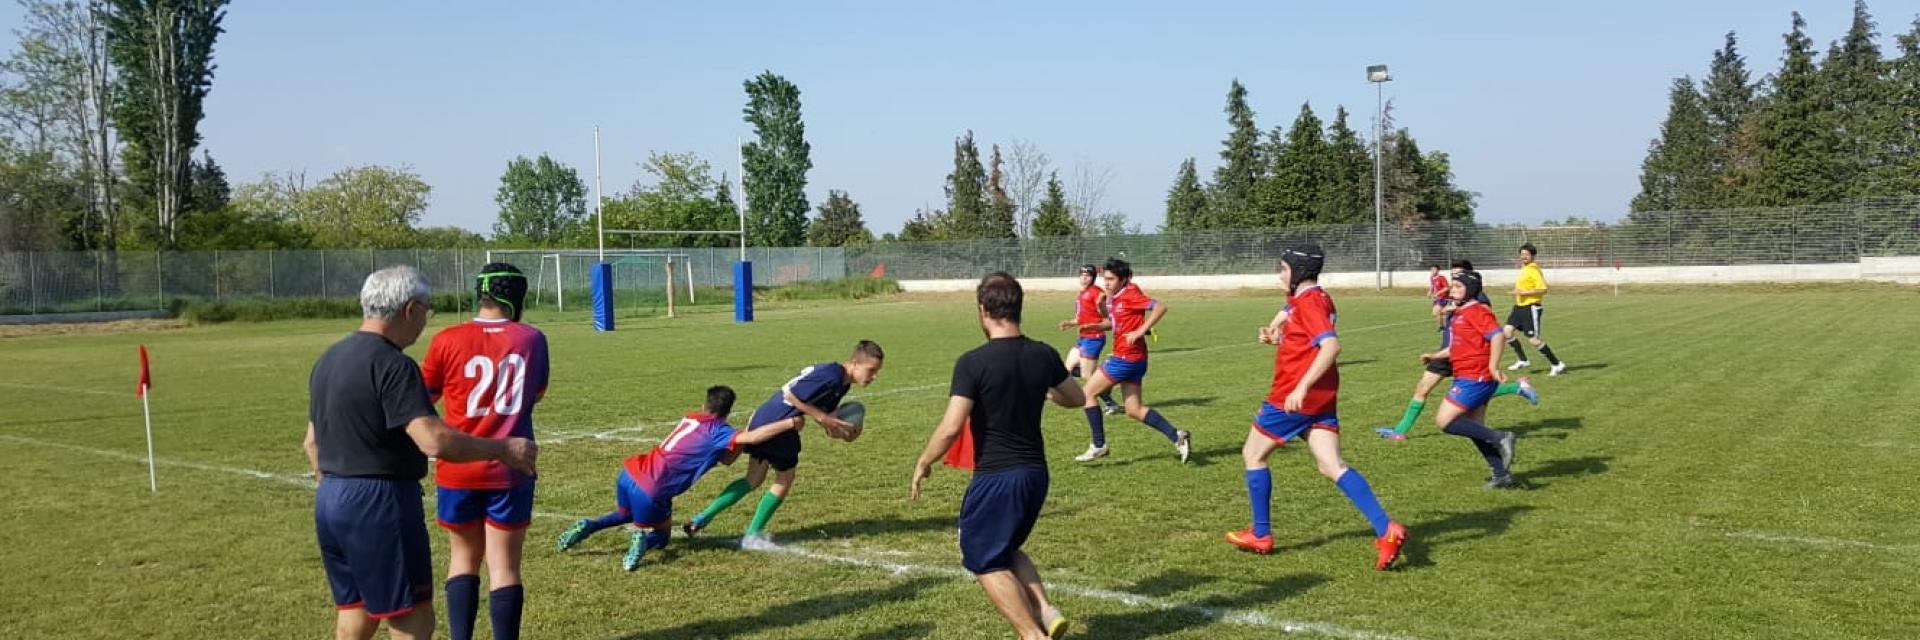 Rugby Edu Fisica Torino